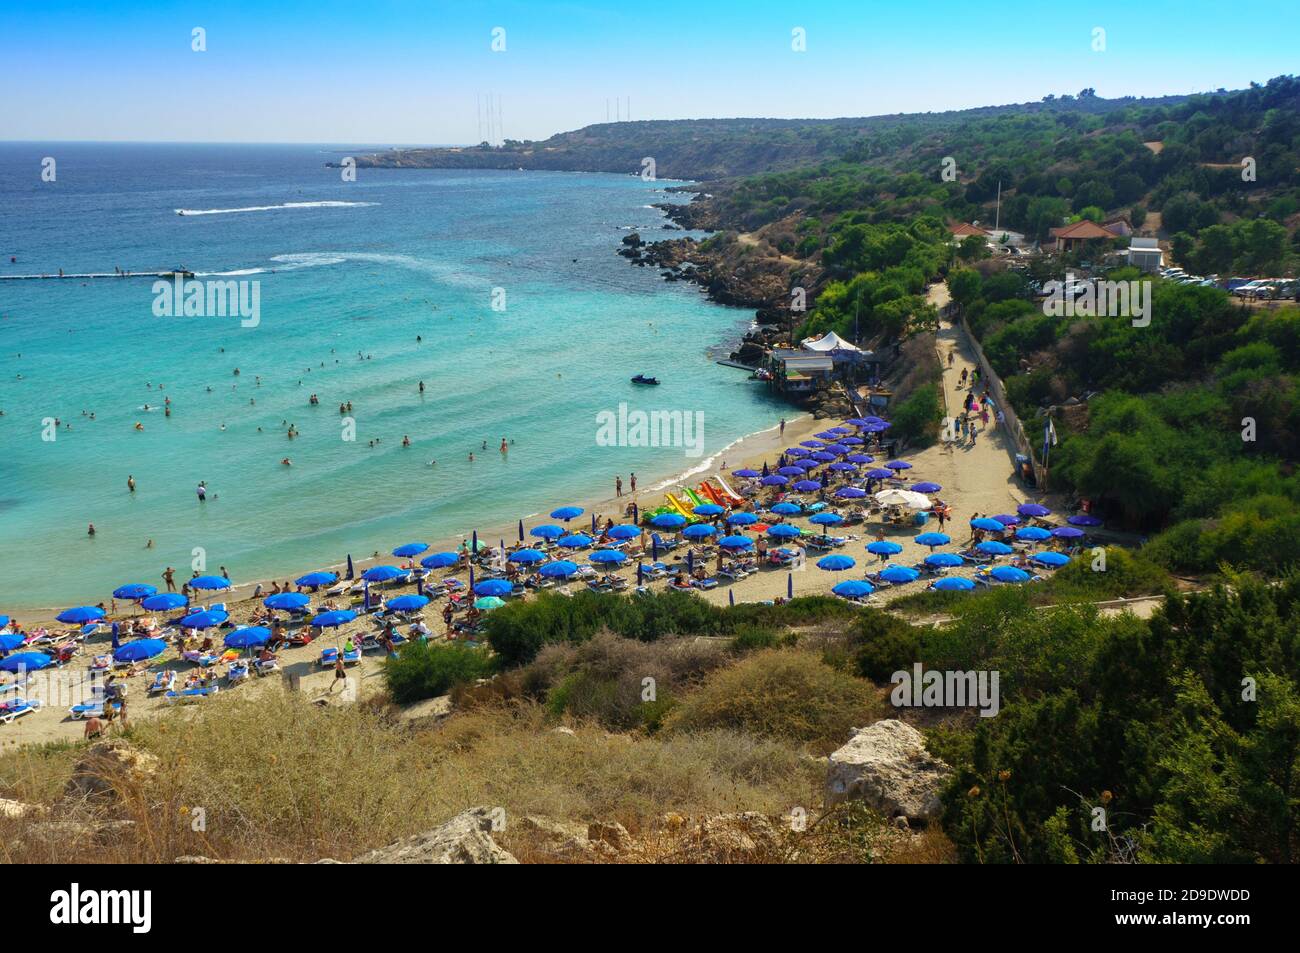 Menschen am berühmten Strand von Konnos Bay Beach, Ayia Napa. Bezirk Famagusta, Zypern. Die besten Strände Zyperns - Konnos Bay im Cape Greko Nationalpark Stockfoto